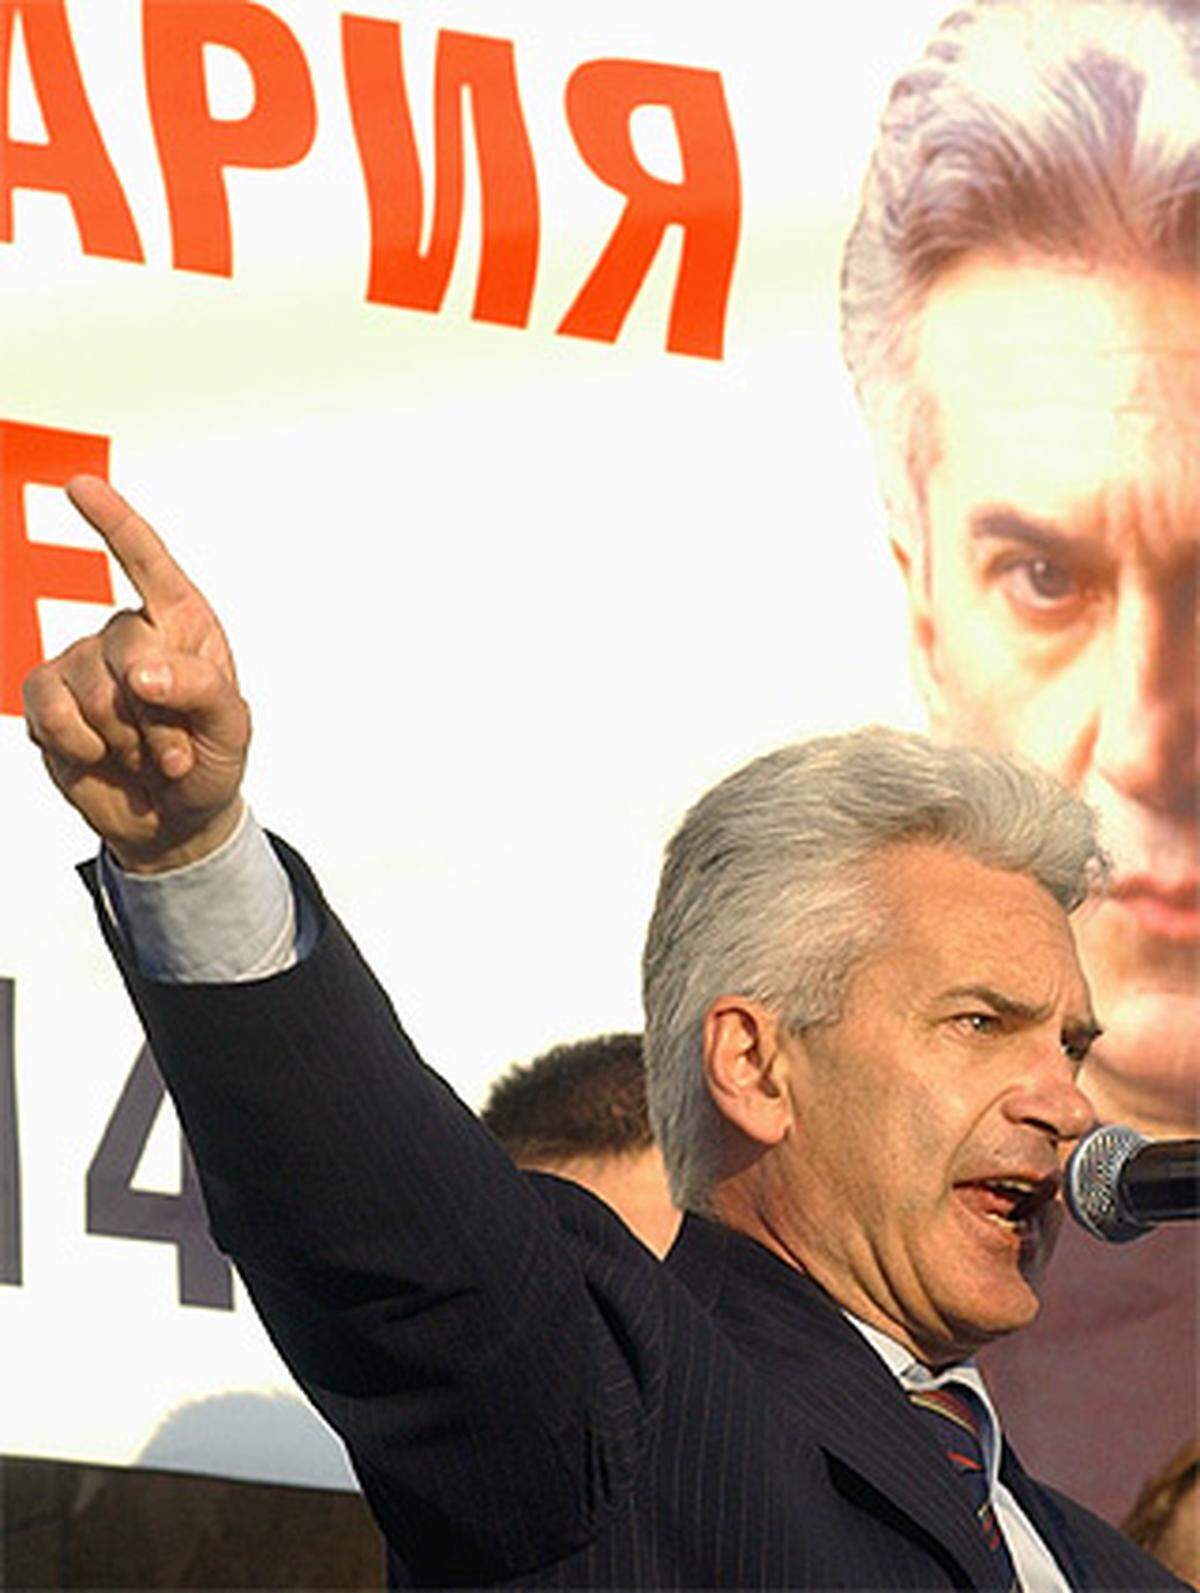 Im Mai 2005 gründete der bulgarische Ultranationalist und Antisemit Wolen Siderow die Partei Ataka. Einen Monat später errang die Koalition Ataka, die aus mehreren rechtsextremen Parteien besteht, 8,9 Prozent der Stimmen bei den Parlamentswahlen. Bei den Wahlen 2009 hielt Ataka ihre Abgeordneten.